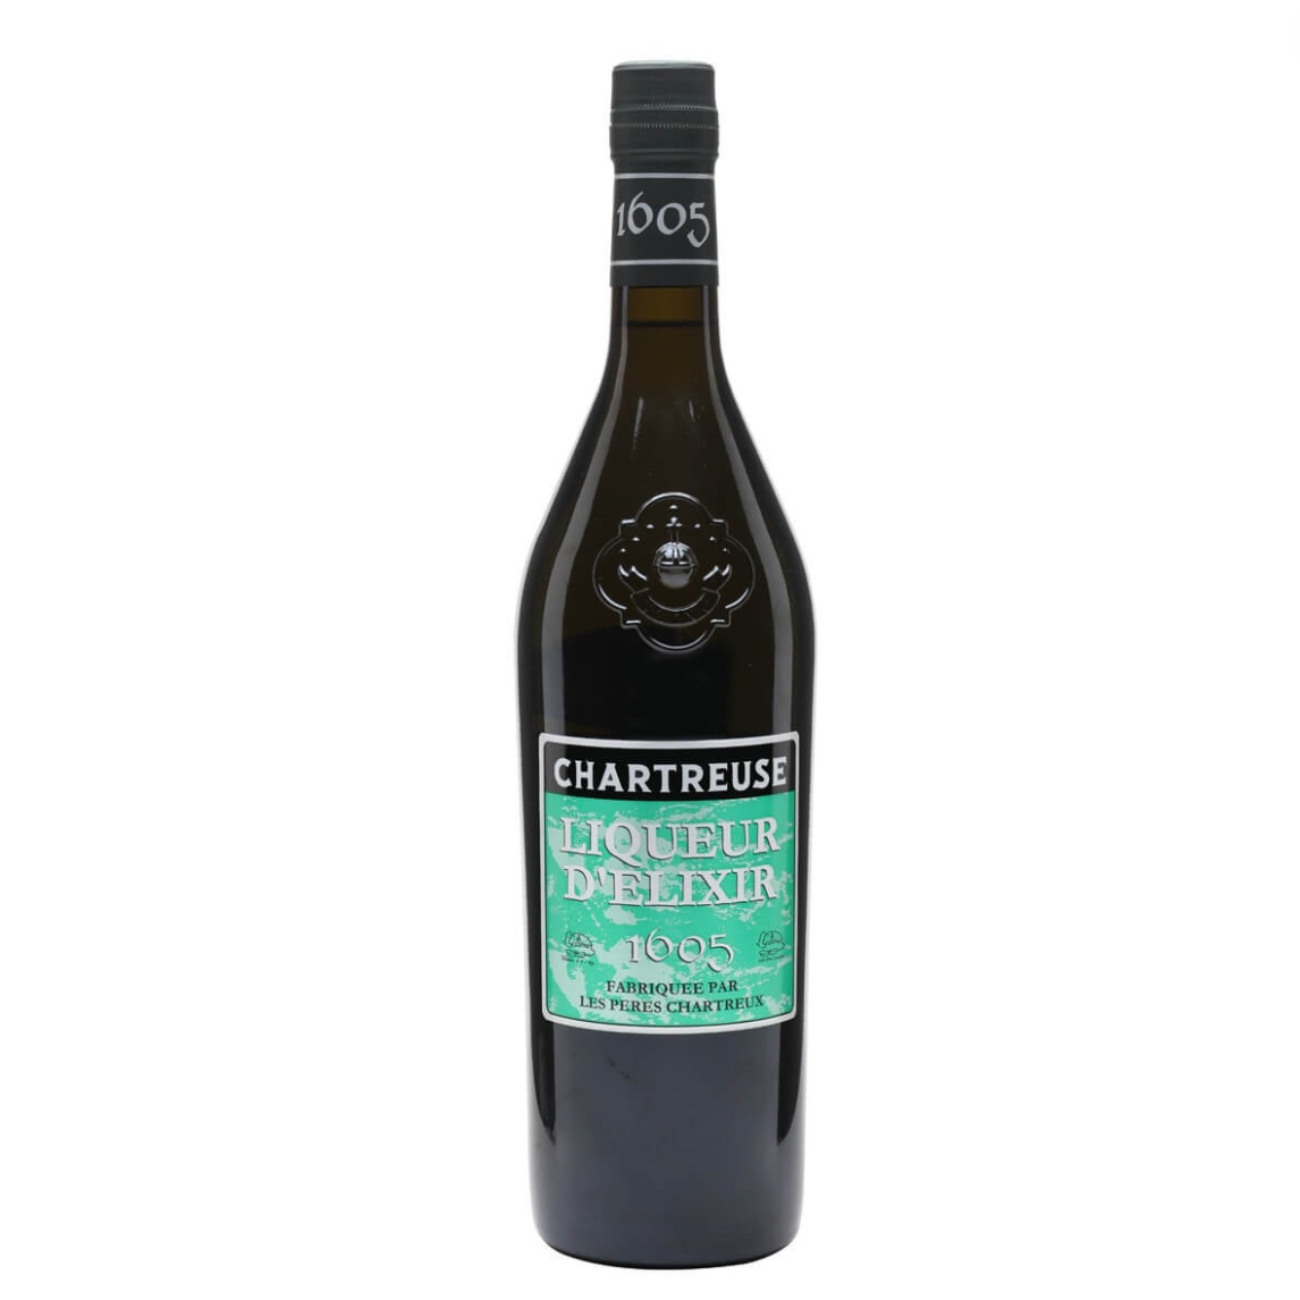 Chartreuse | D’Elixir Liqueur – 1605